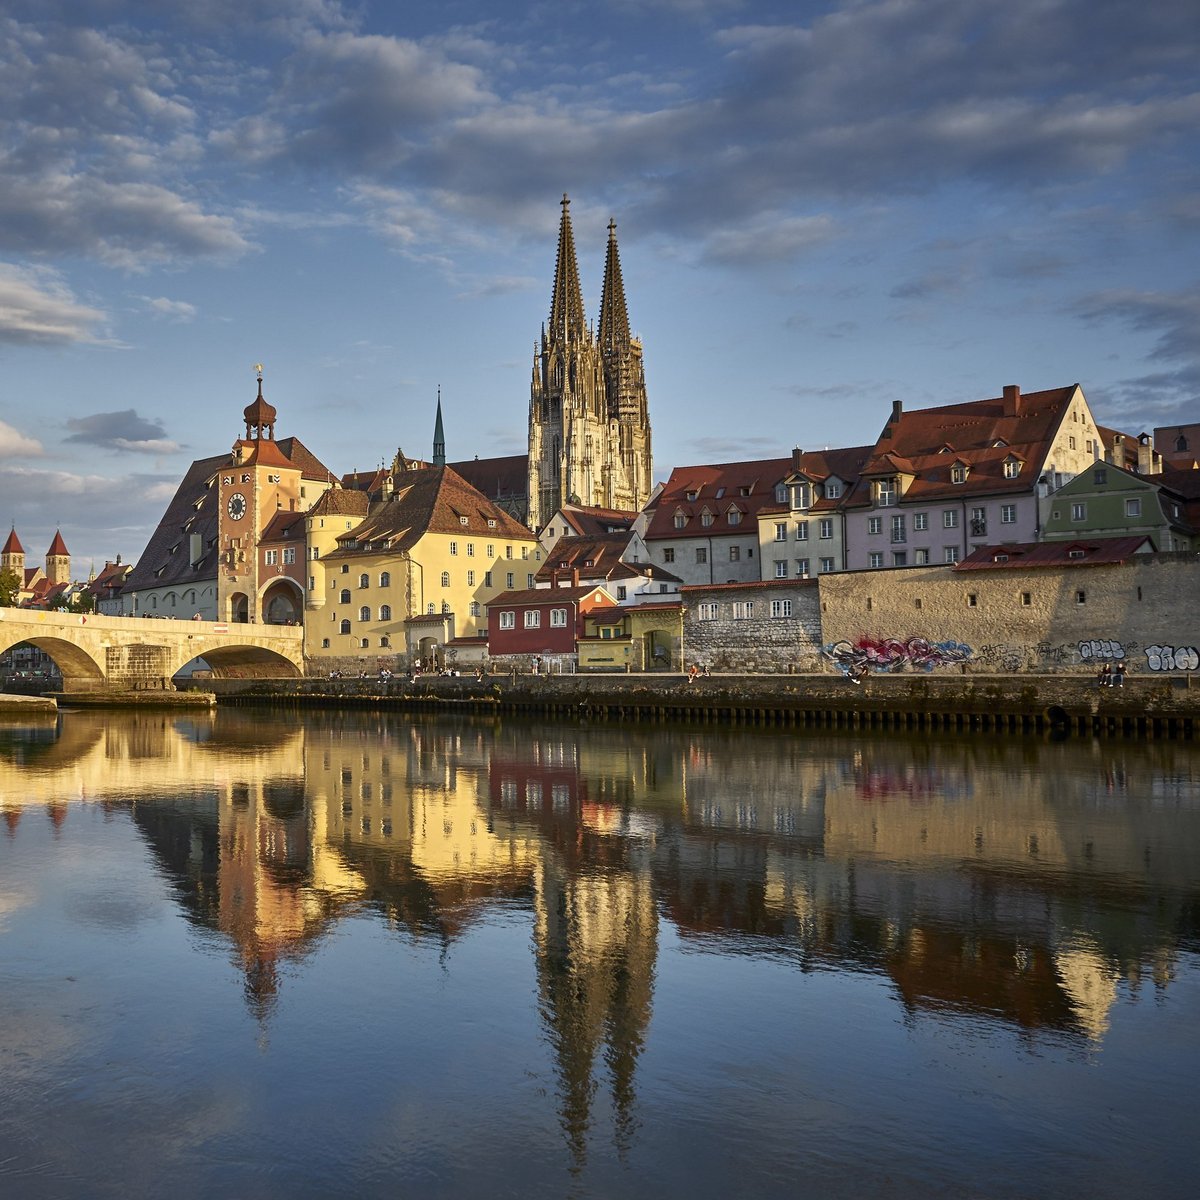 Regensburg on the river Danube